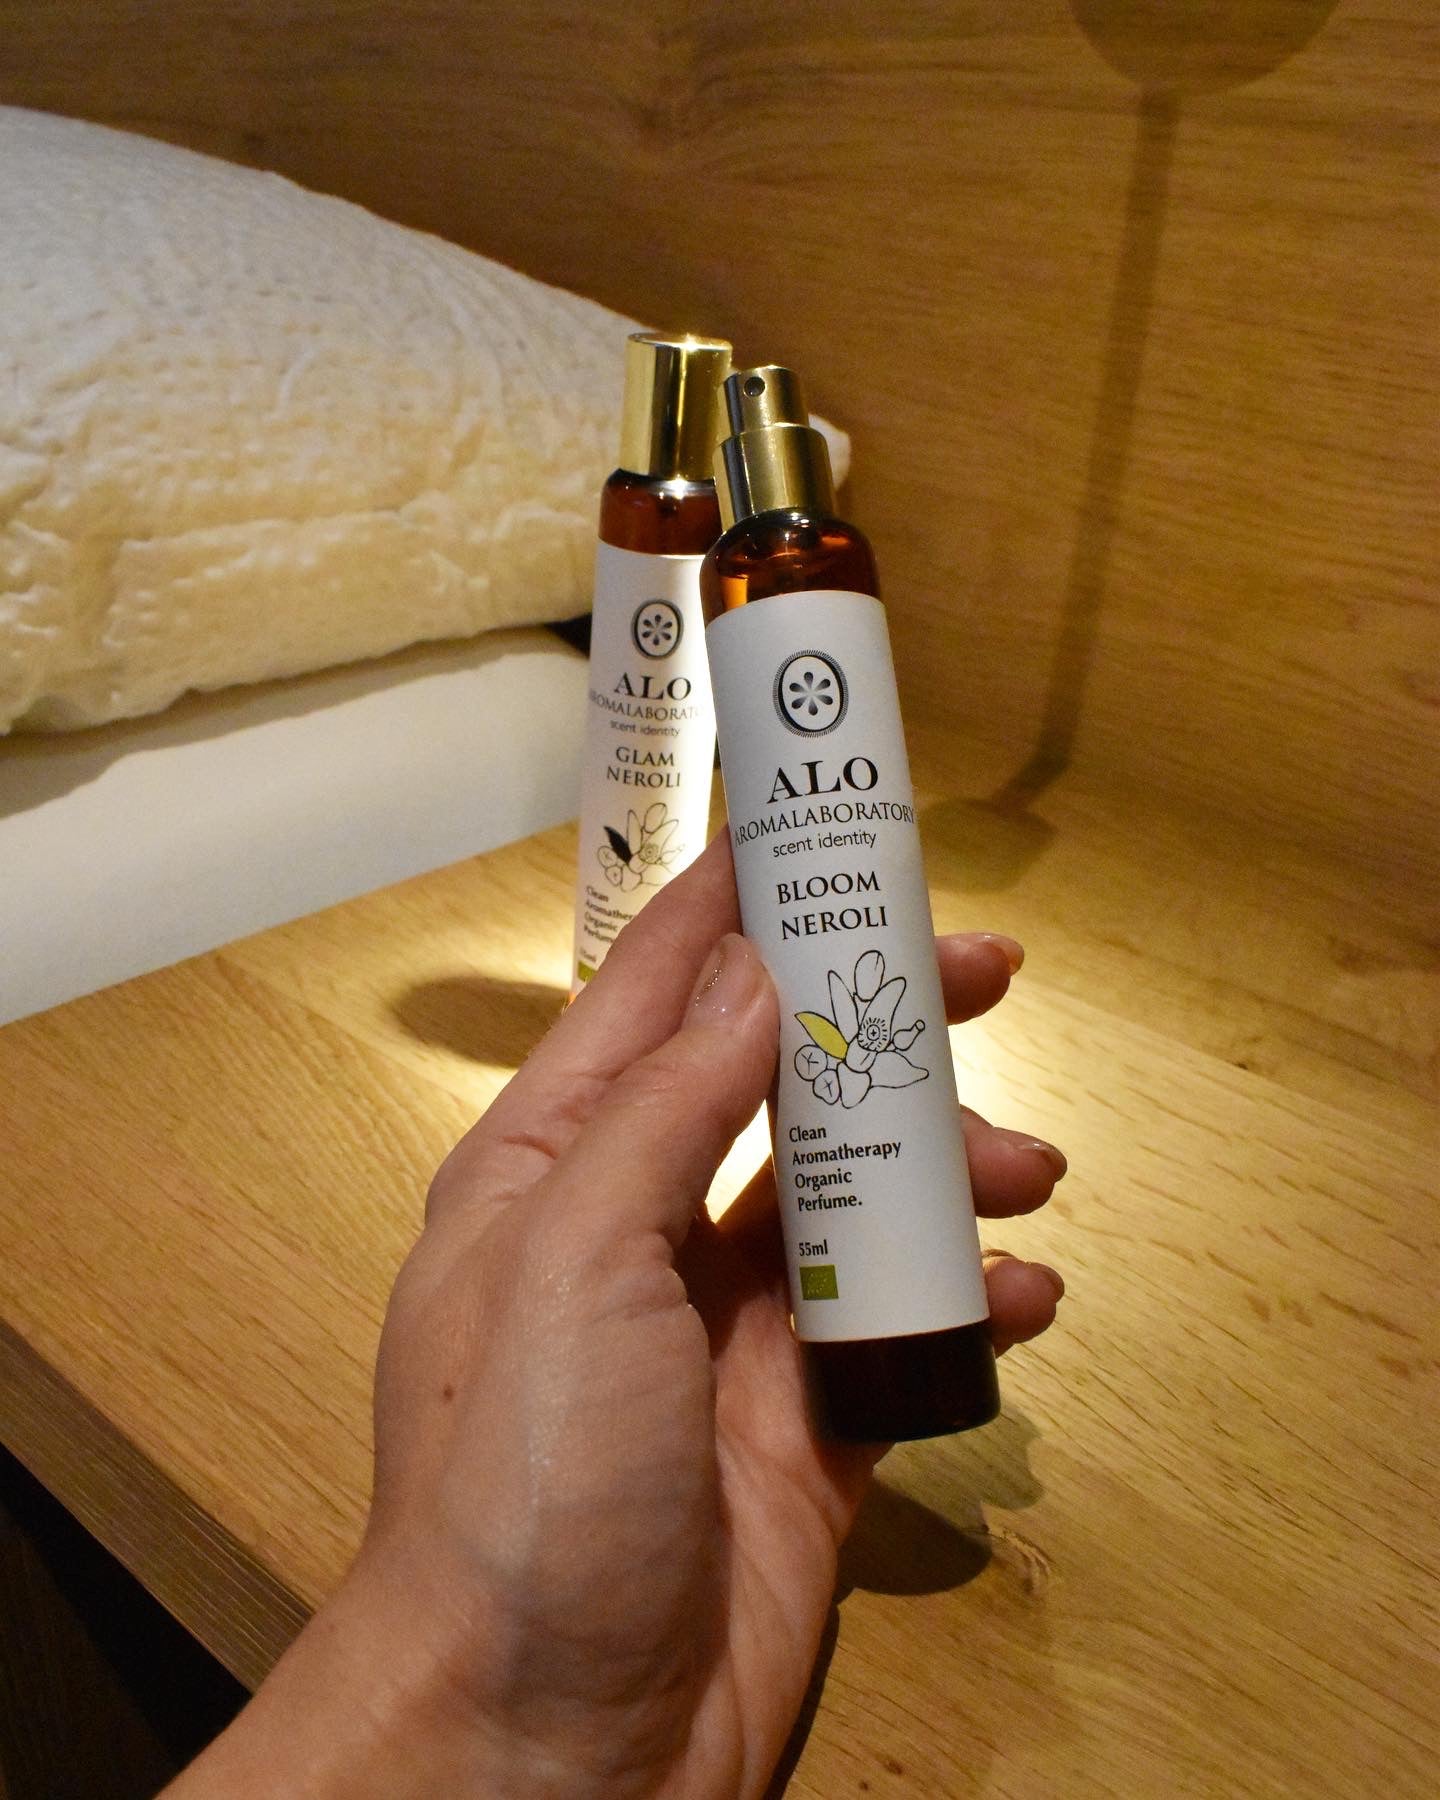 BLOOM NEROLI. Aromatherapy Clean Perfume. Organic. 55ml.